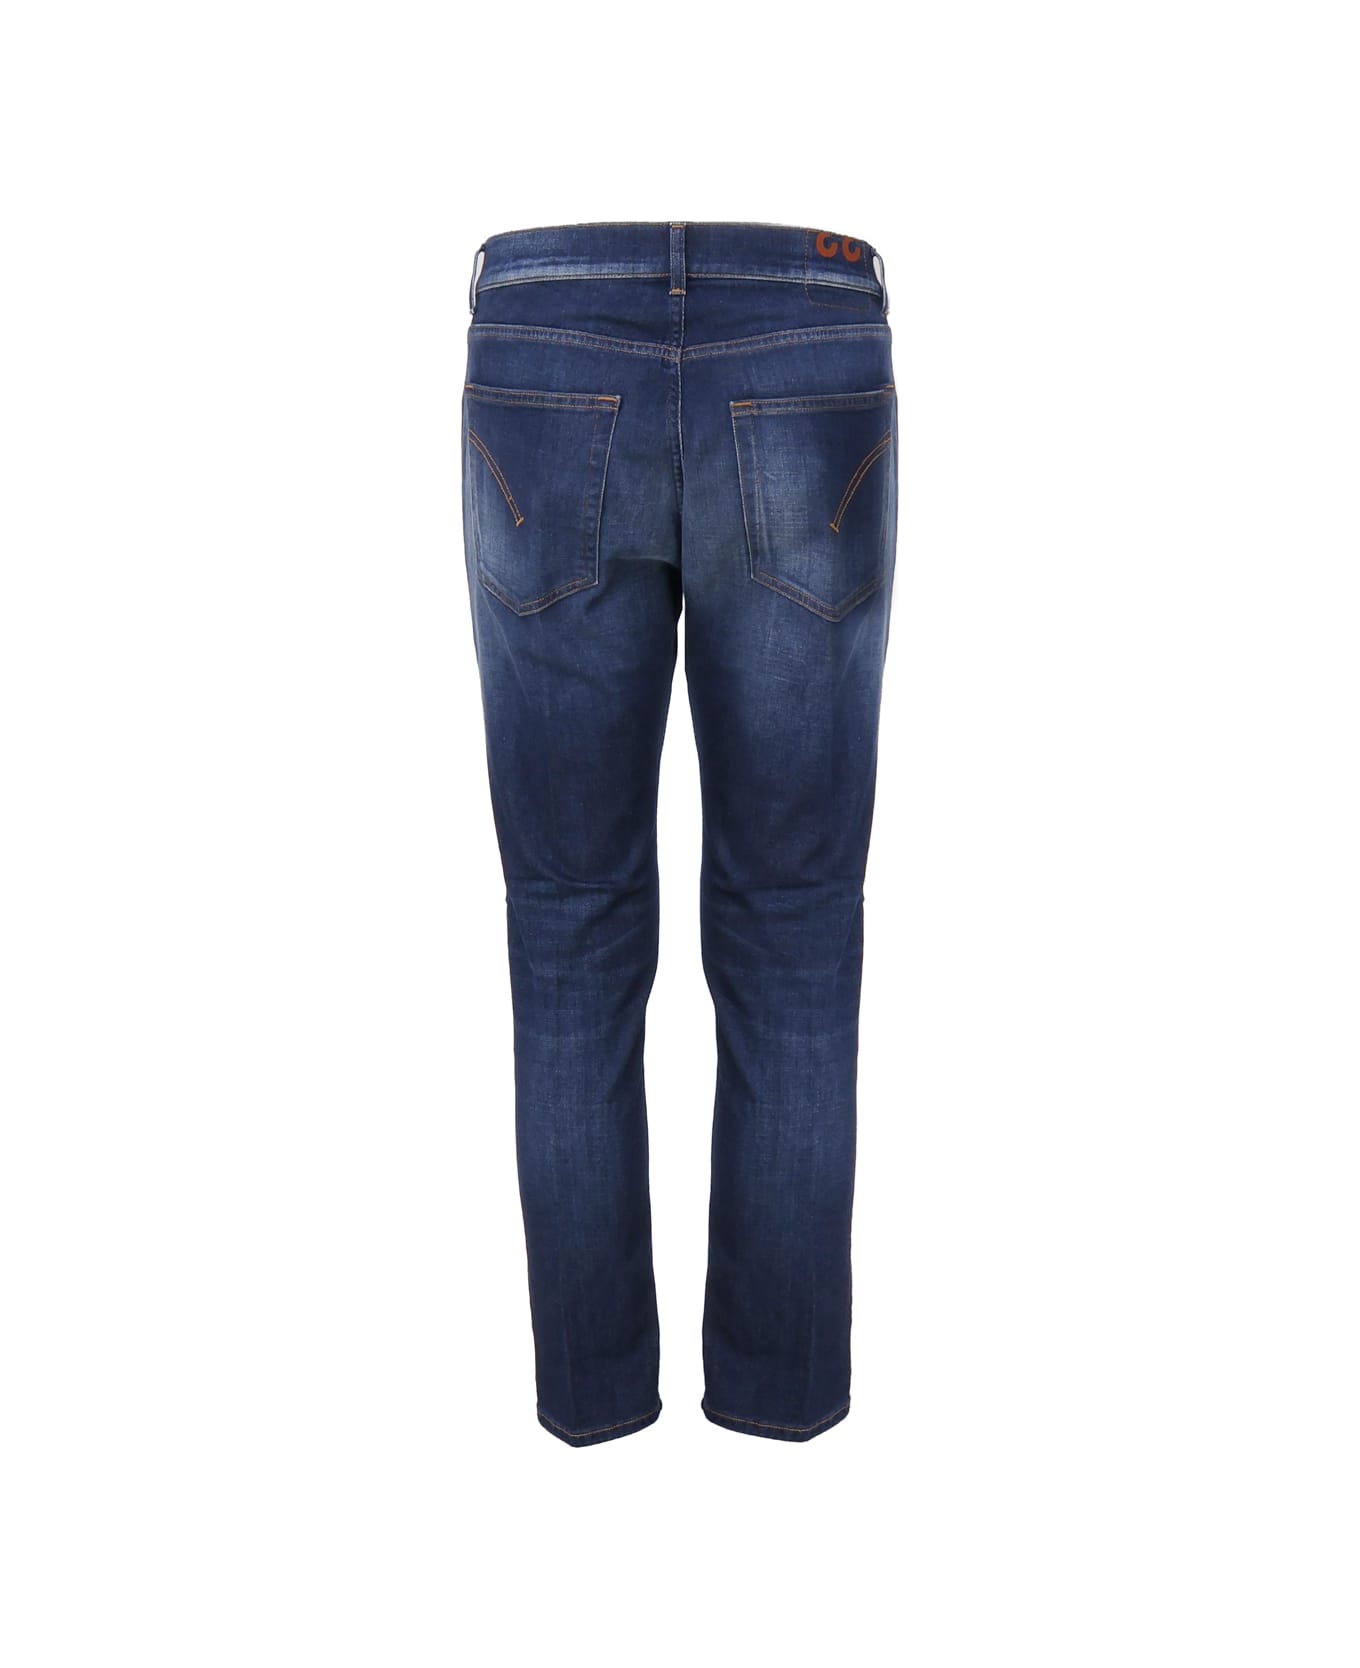 Dondup Cotton Jeans Five Pockets In Cotton Denim - Dark blue